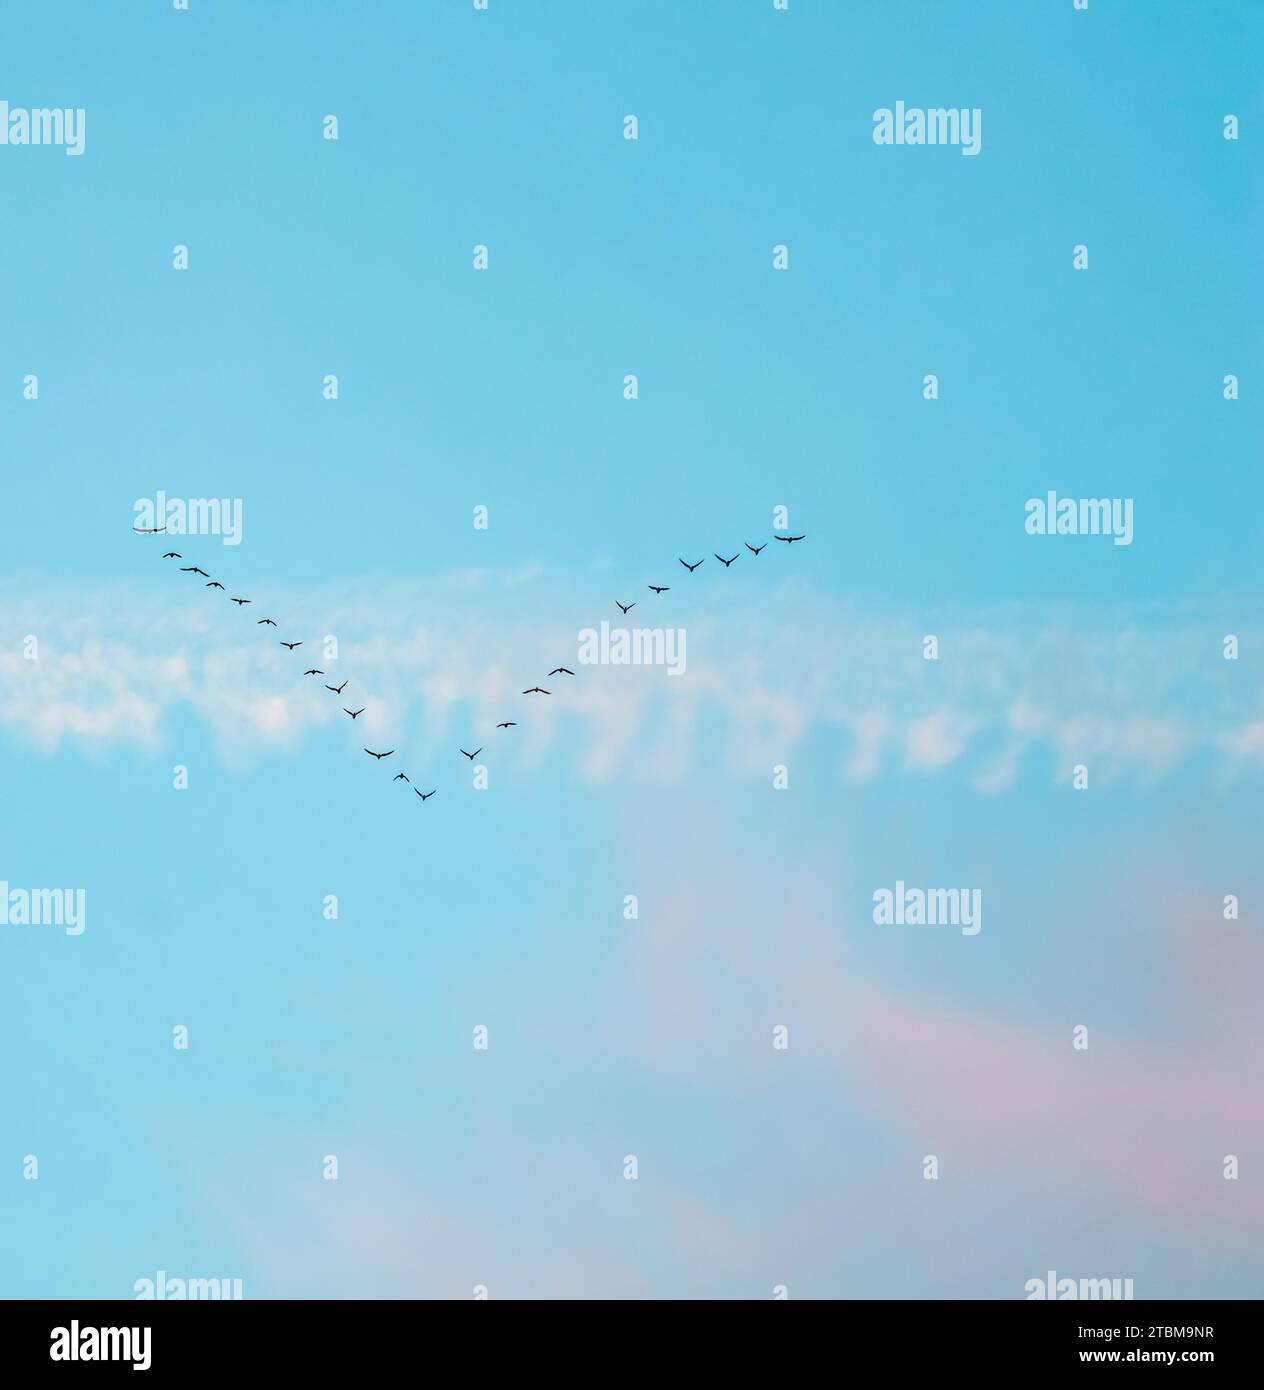 Schar von Wildvögeln fliegen in einem Keil gegen den blauen Himmel mit weißen und rosa Wolken im Sonnenuntergang das Konzept der Vogelzug Stockfoto